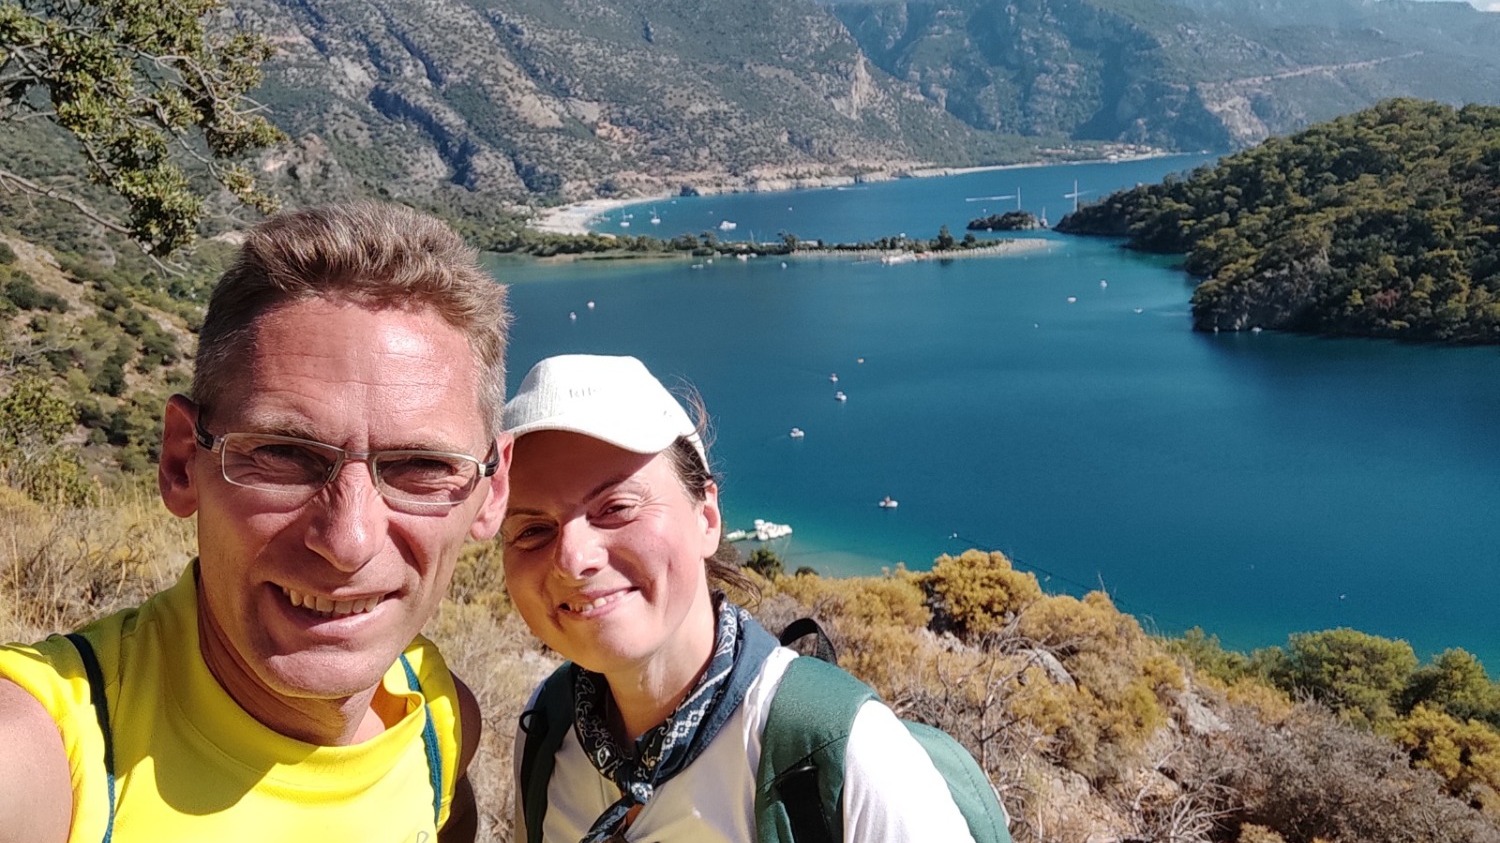 Кирилл и Лидия работают в СМИ и вместе ведут блог о путешествиях